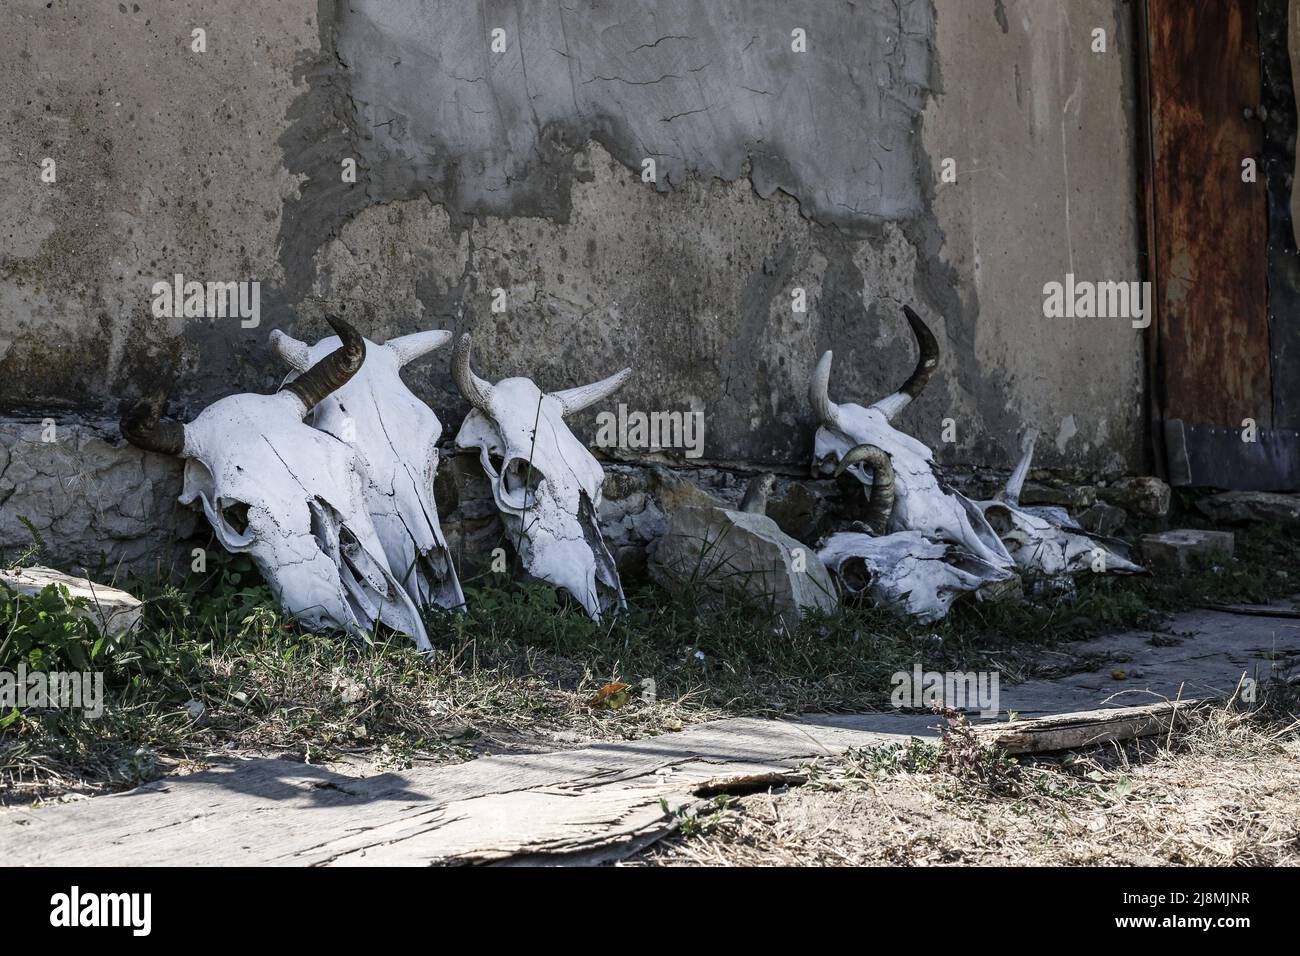 Squelettes de tête (crâne) d'une vache à cornes debout le long d'un mur en béton à l'ombre, par une journée ensoleillée Banque D'Images